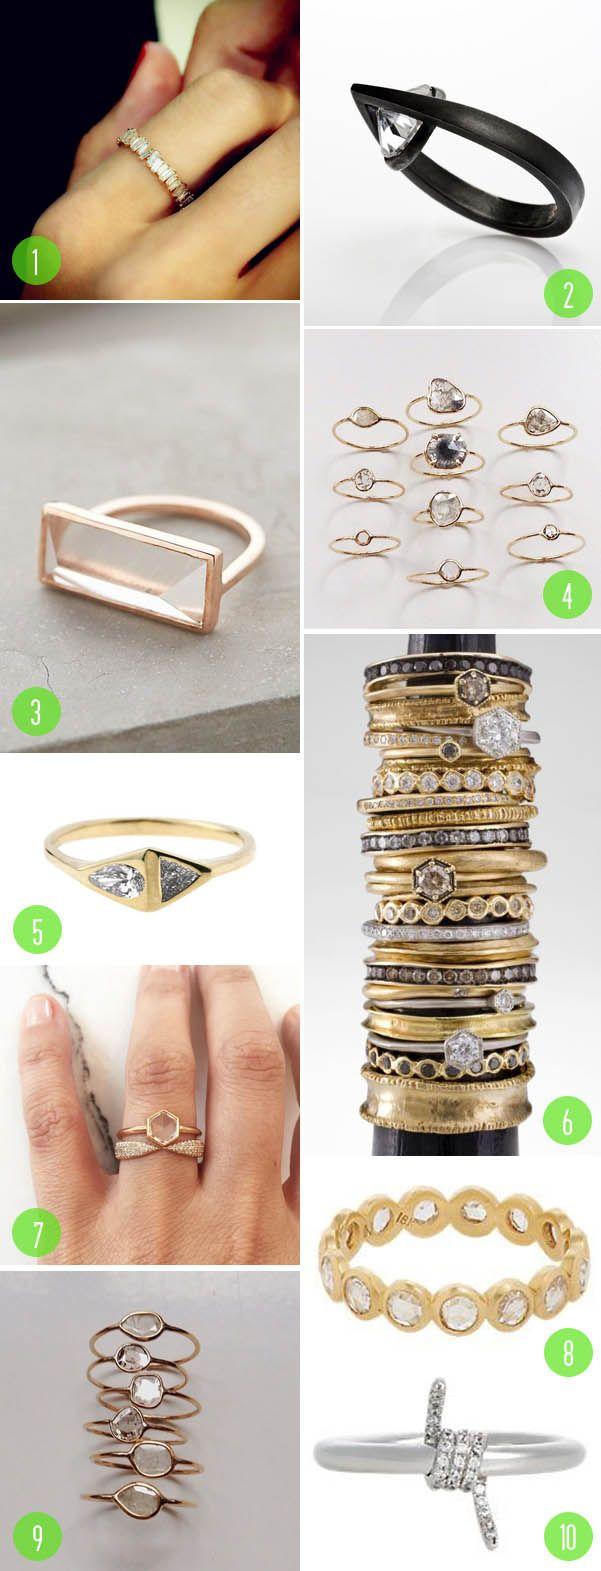 Wedding - Top 10: Rings